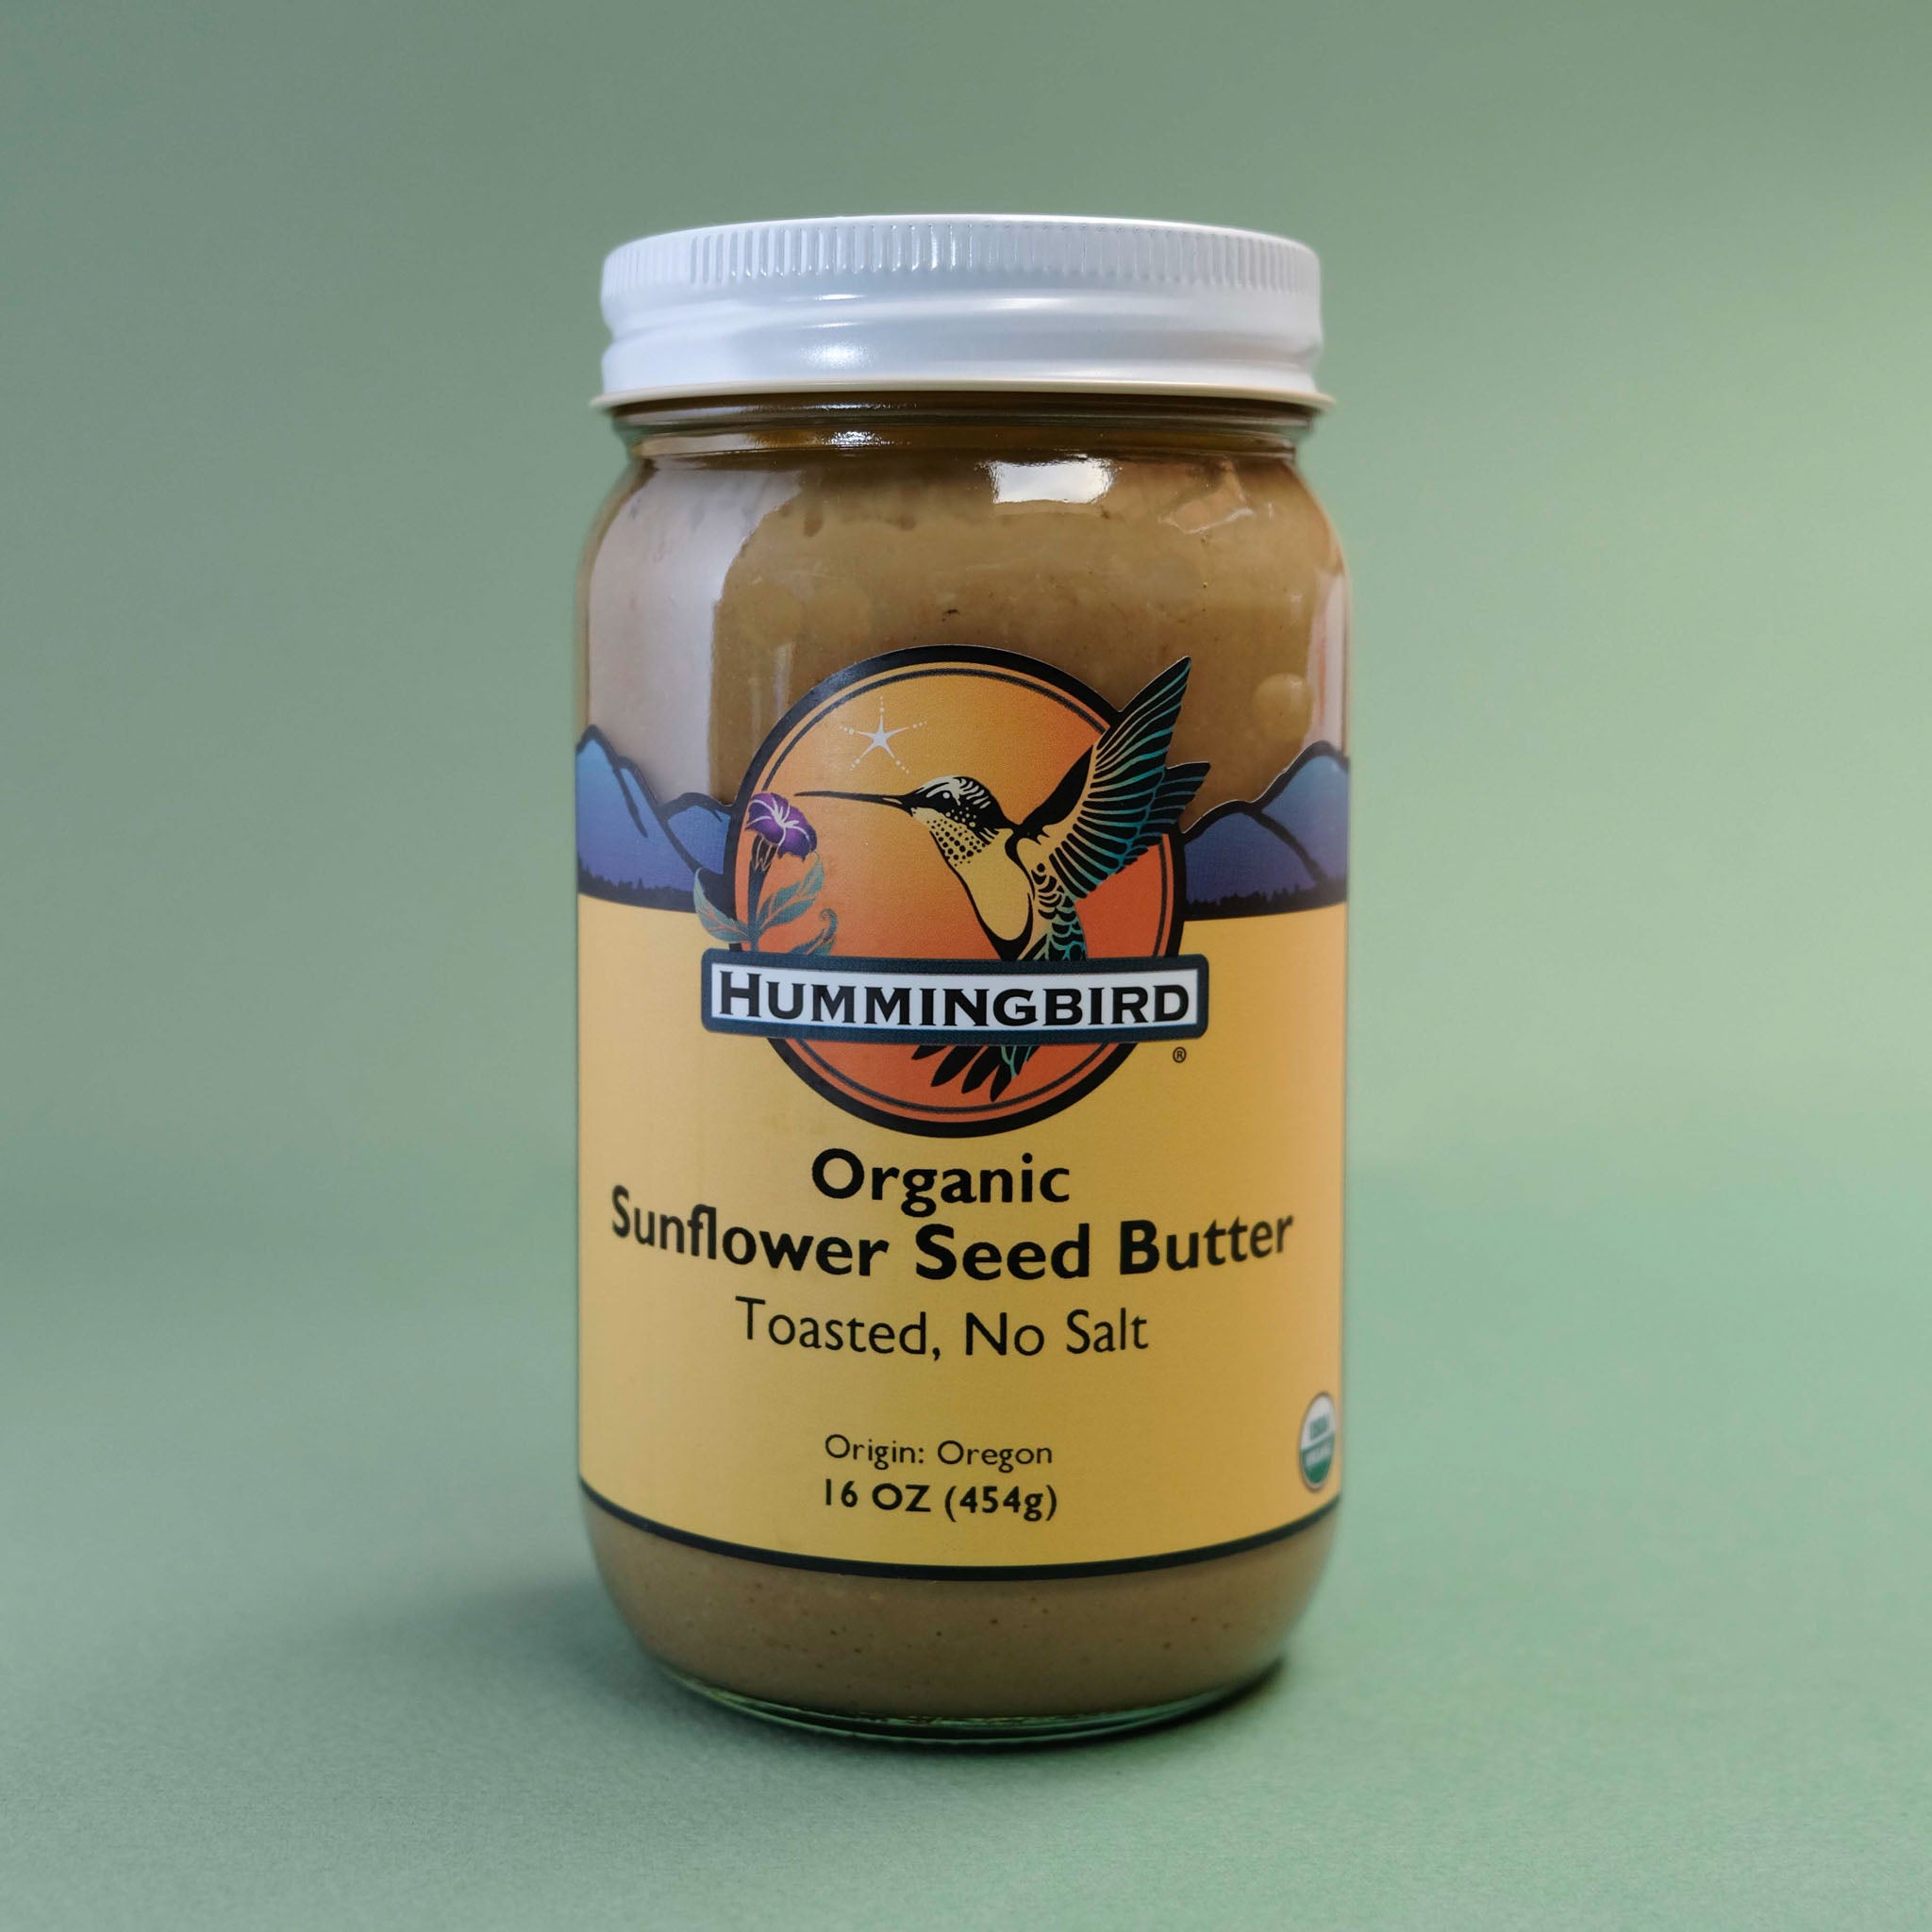 Organic Sunflower Seed Butter